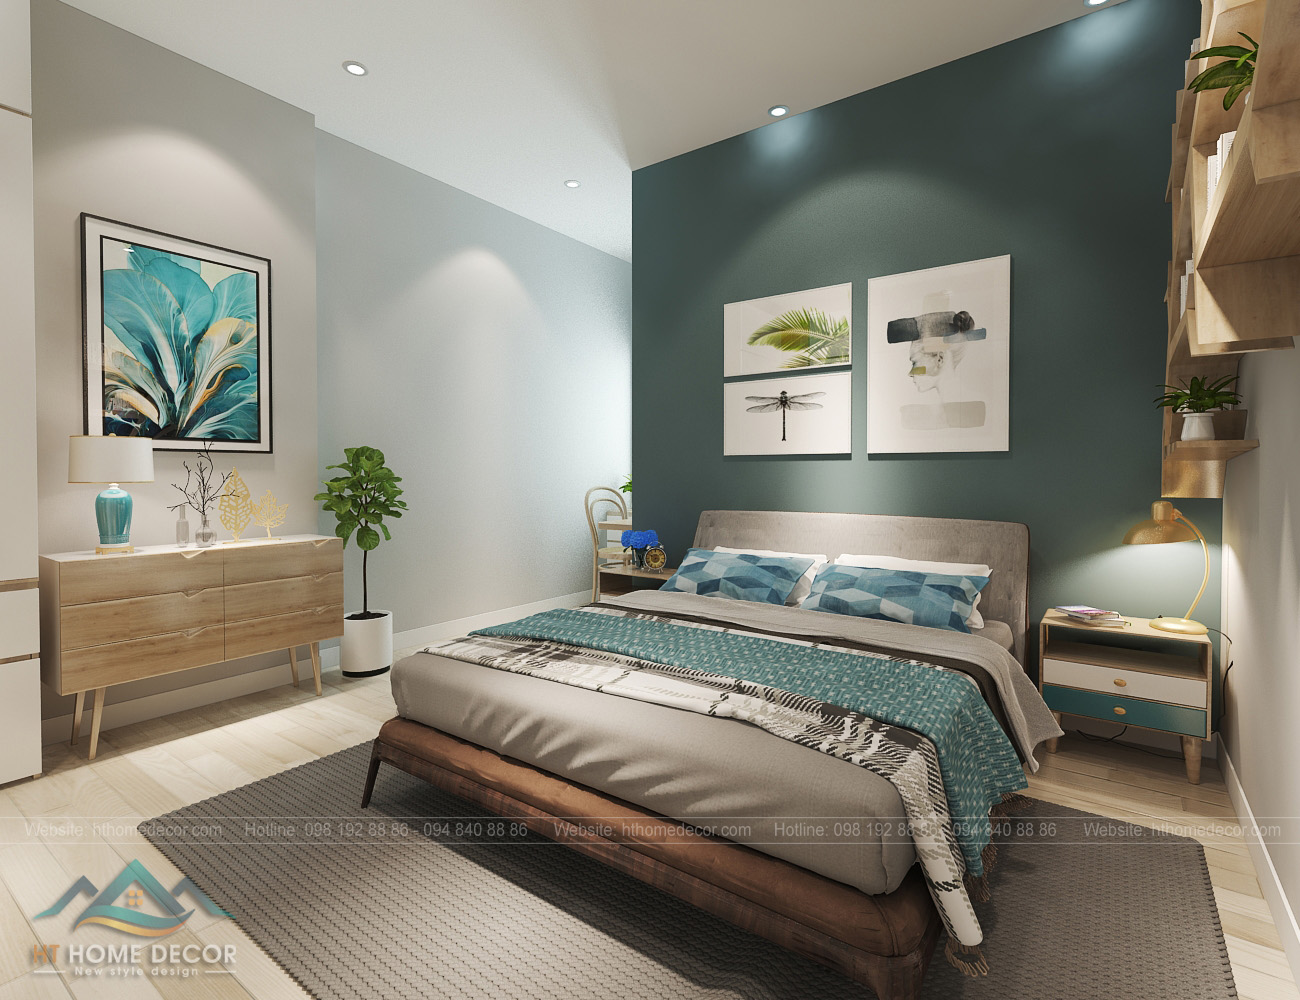 Không thể không trầm trồ trước sự dễ thương của phòng ngủ xanh lá này. Tinh tế lựa chọn giường ngủ màu trầm để tôn lên được vẻ đẹp của màu xanh chủ đạo.